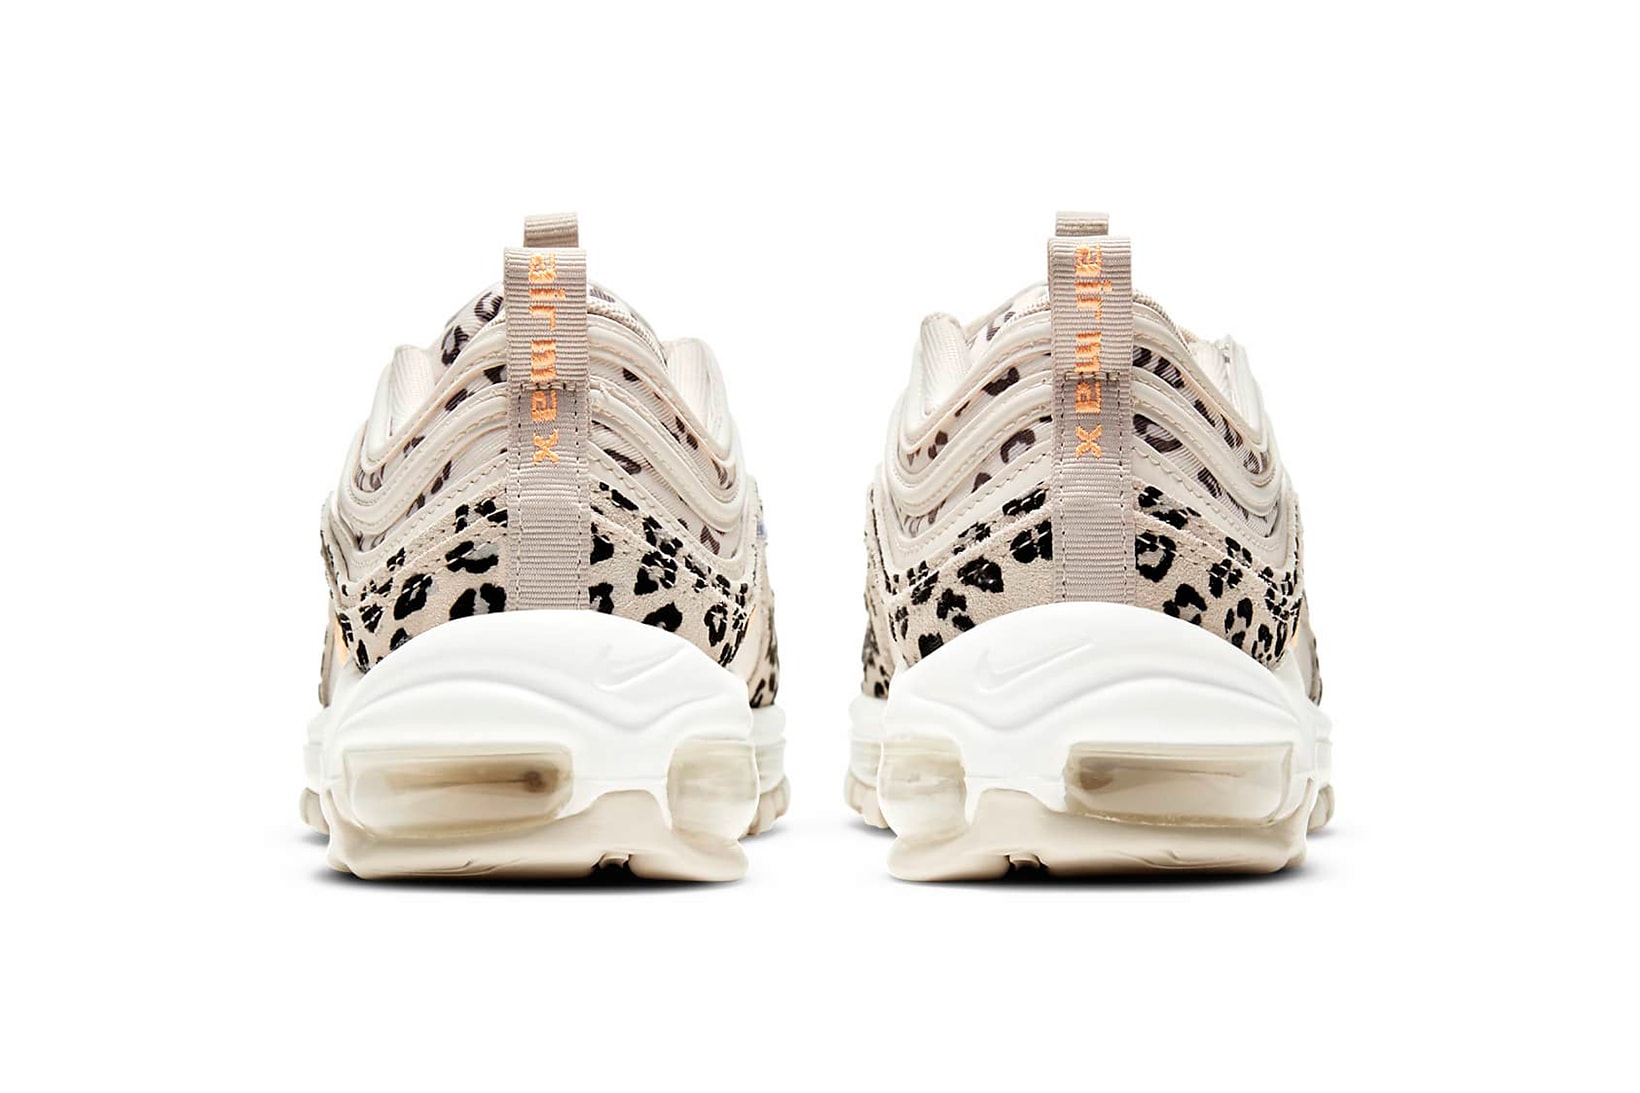 nike air max 97 am97 se womens sneakers cheetah print beige white orange colorway kicks footwear shoes sneakerhead heel